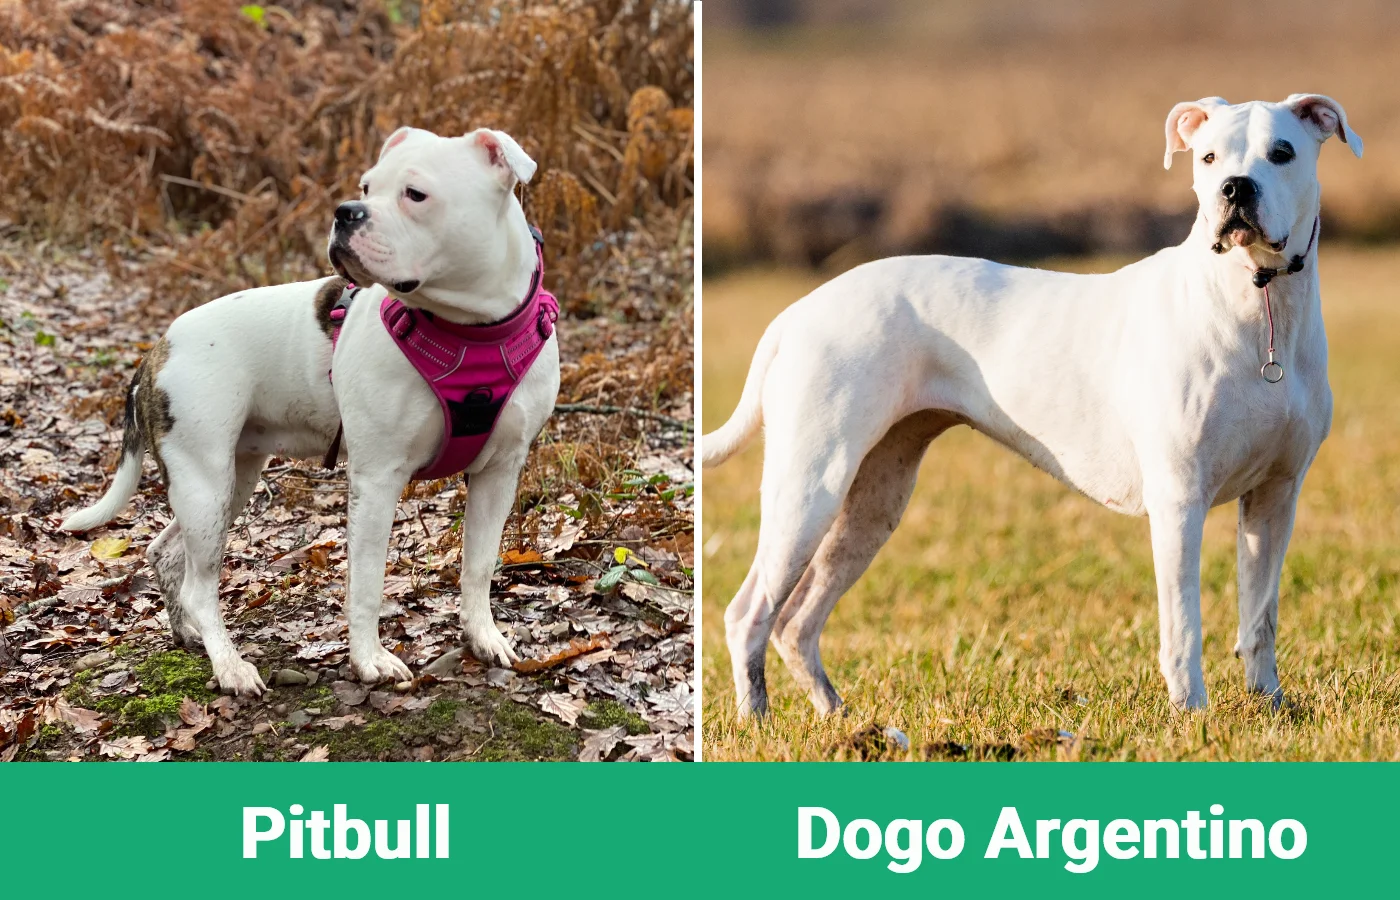 Dogo Argentino Breed Profile: History, Purpose, Care, and Companionship